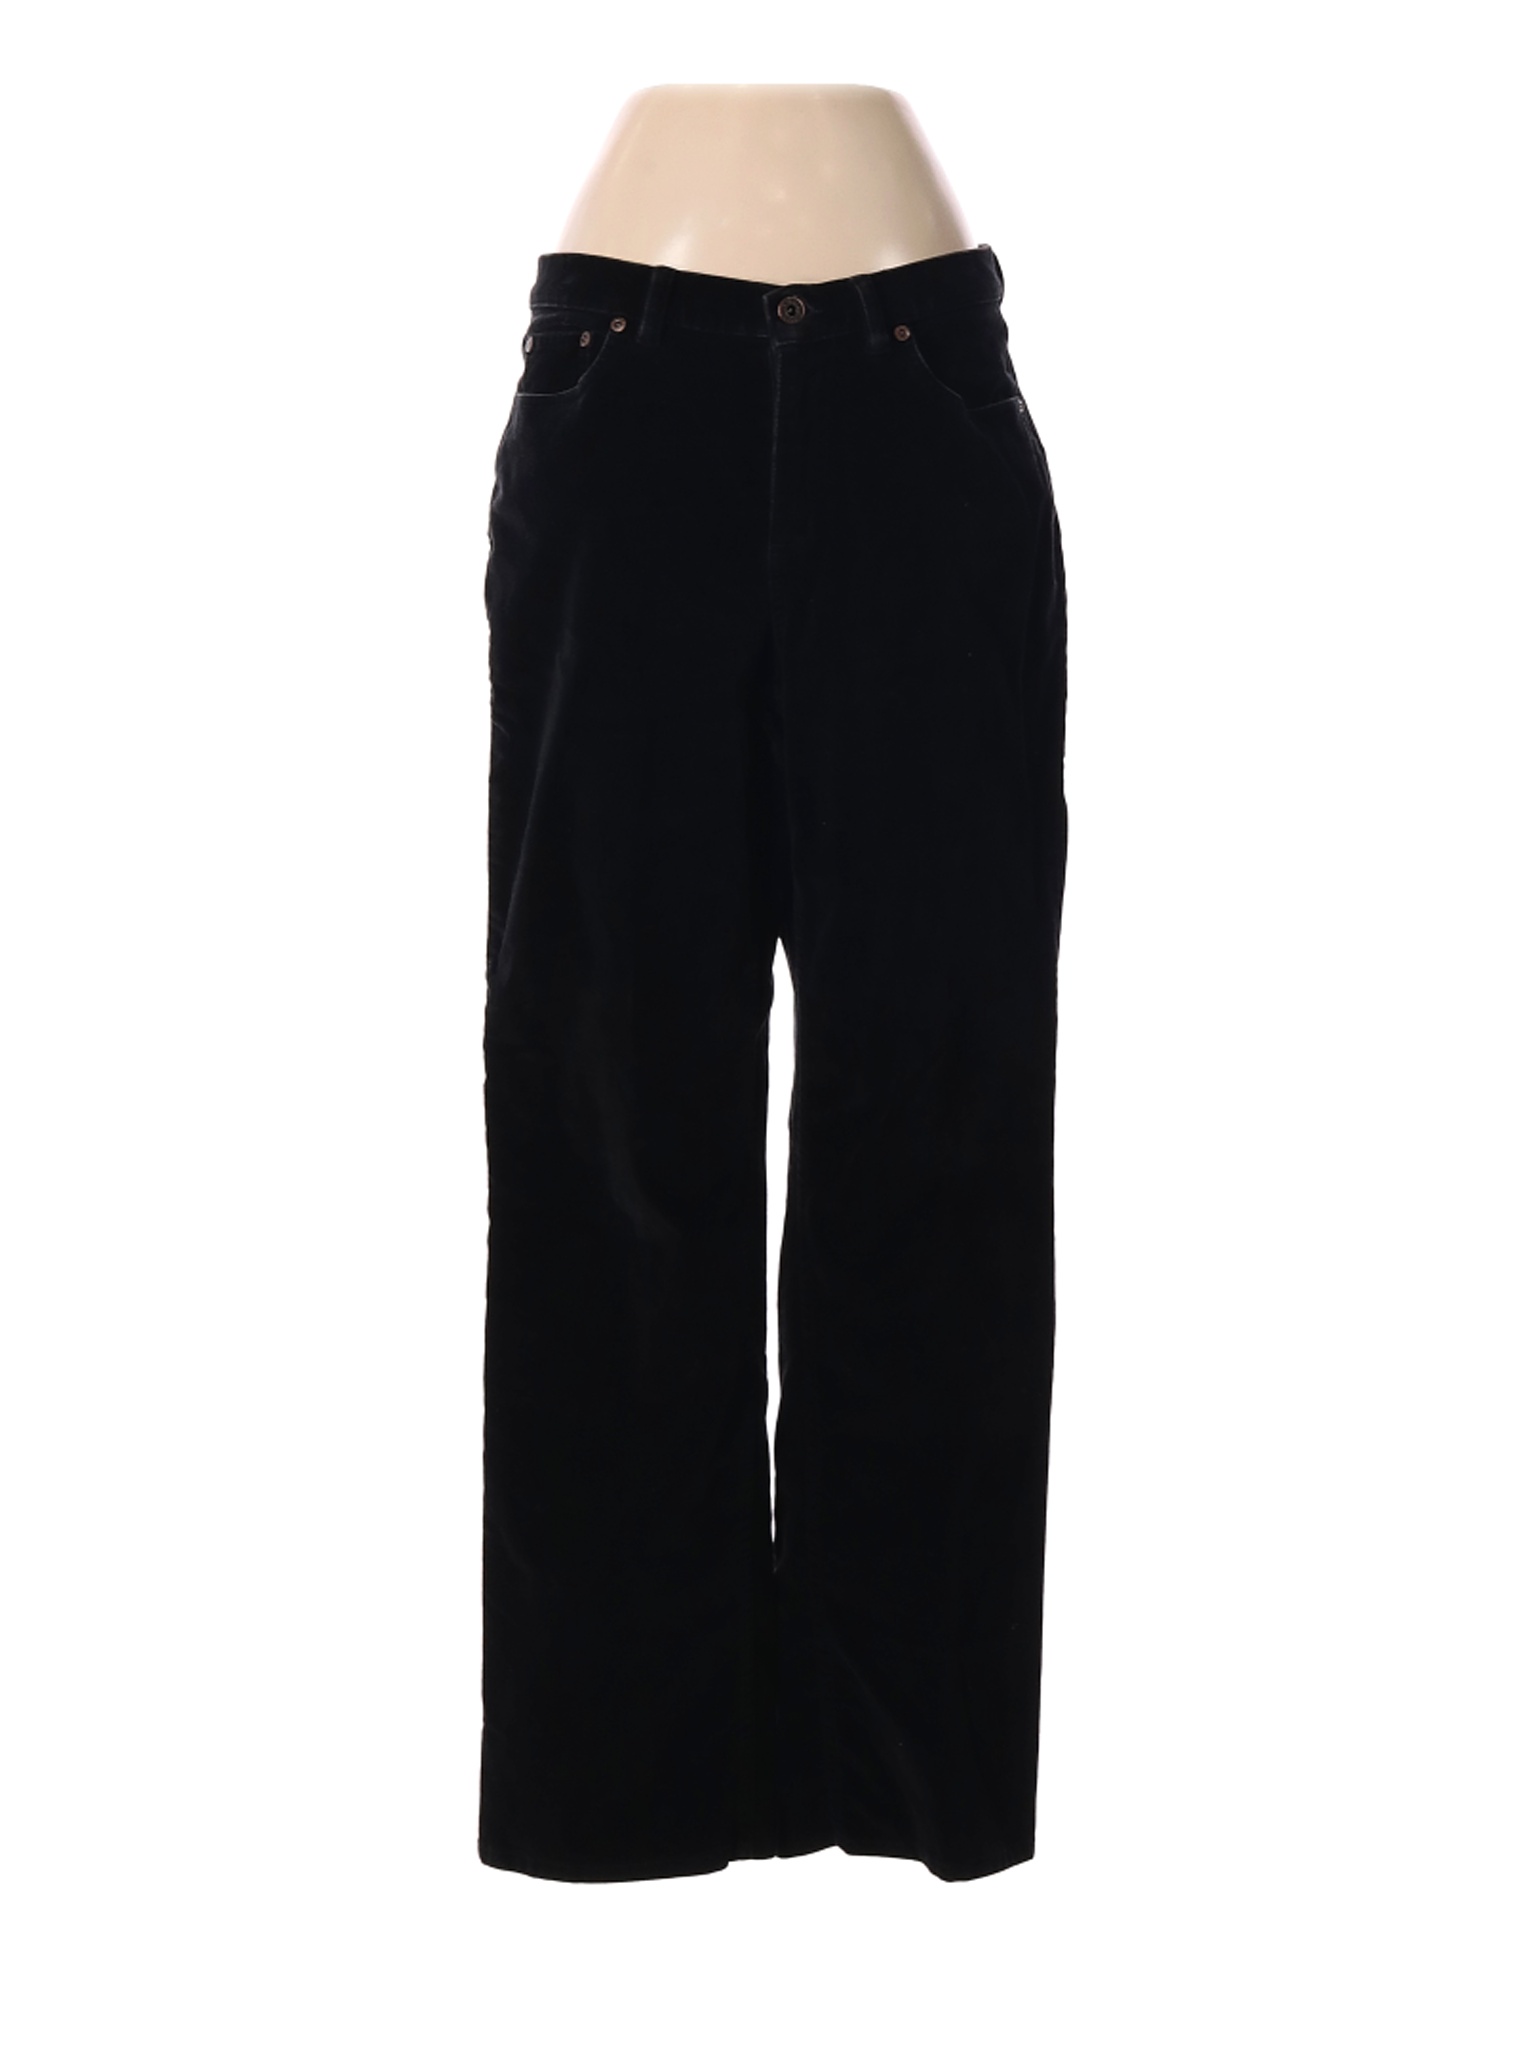 L.L.Bean Women Black Casual Pants 6 | eBay